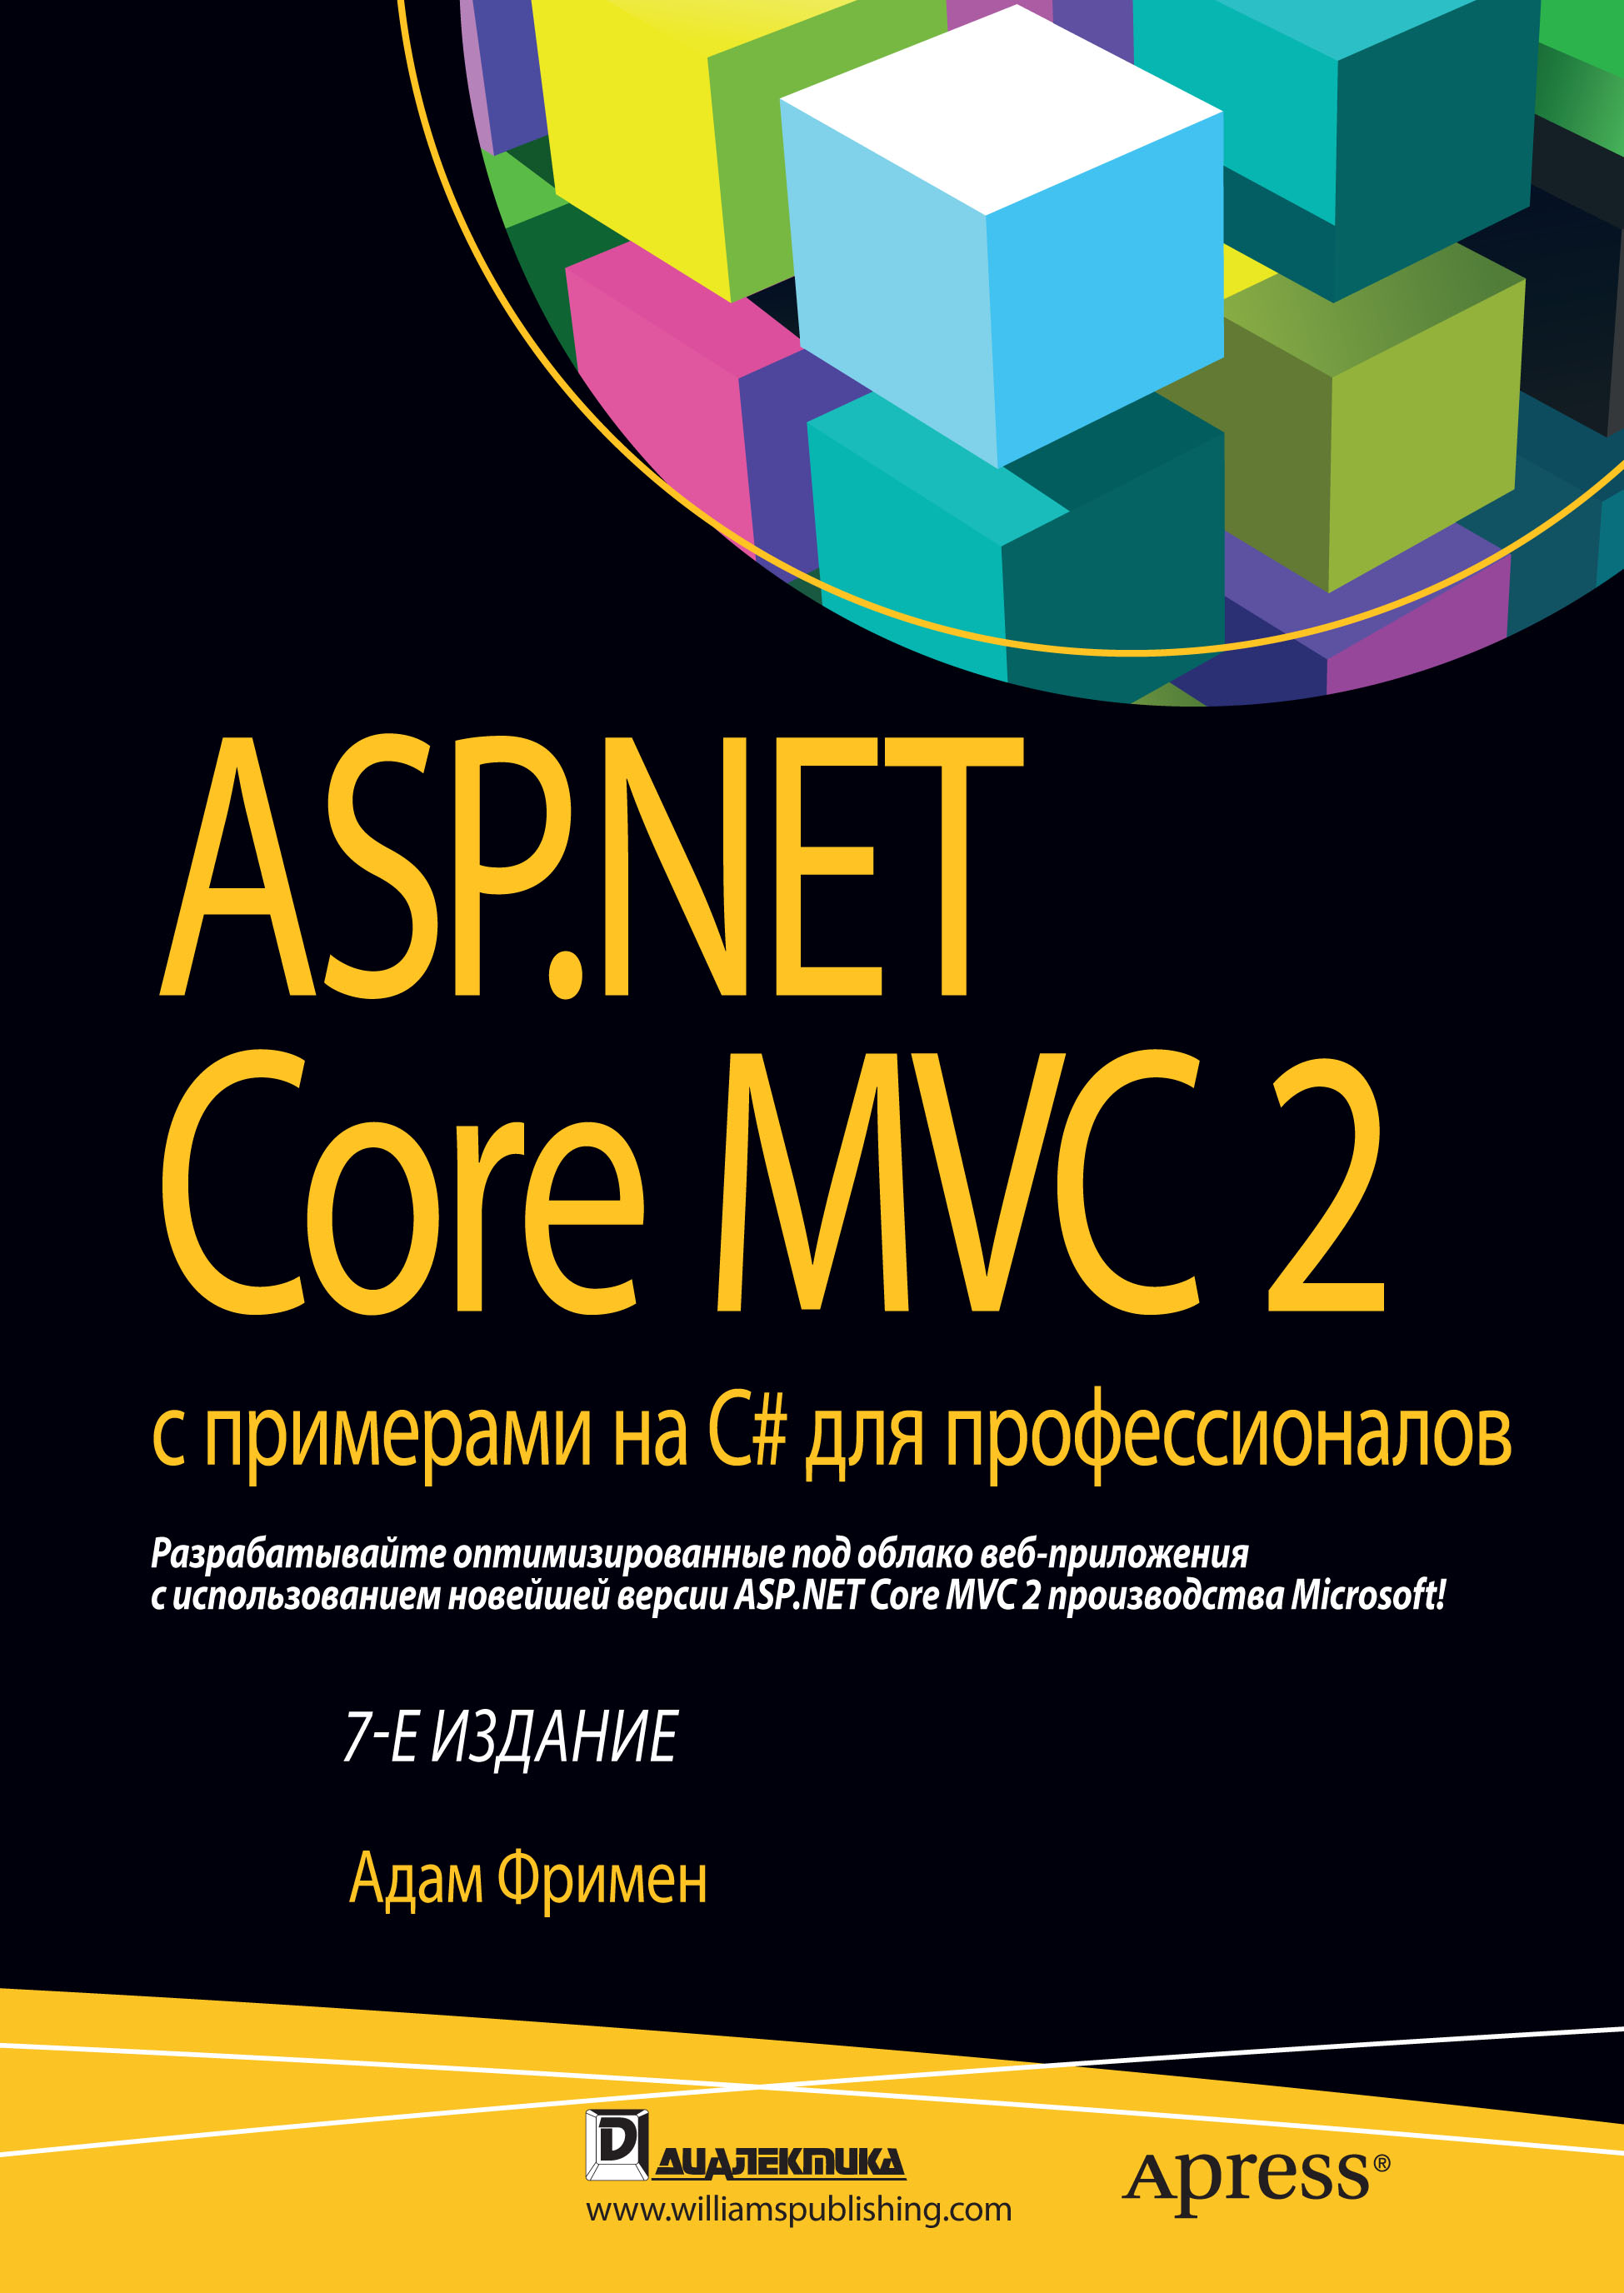 Книга  ASP.NET Core MVC 2 с примерами на C# для профессионалов созданная Адам Фримен, Ю. Н. Артеменко может относится к жанру зарубежная компьютерная литература, программирование. Стоимость электронной книги ASP.NET Core MVC 2 с примерами на C# для профессионалов с идентификатором 48613750 составляет 2000.00 руб.